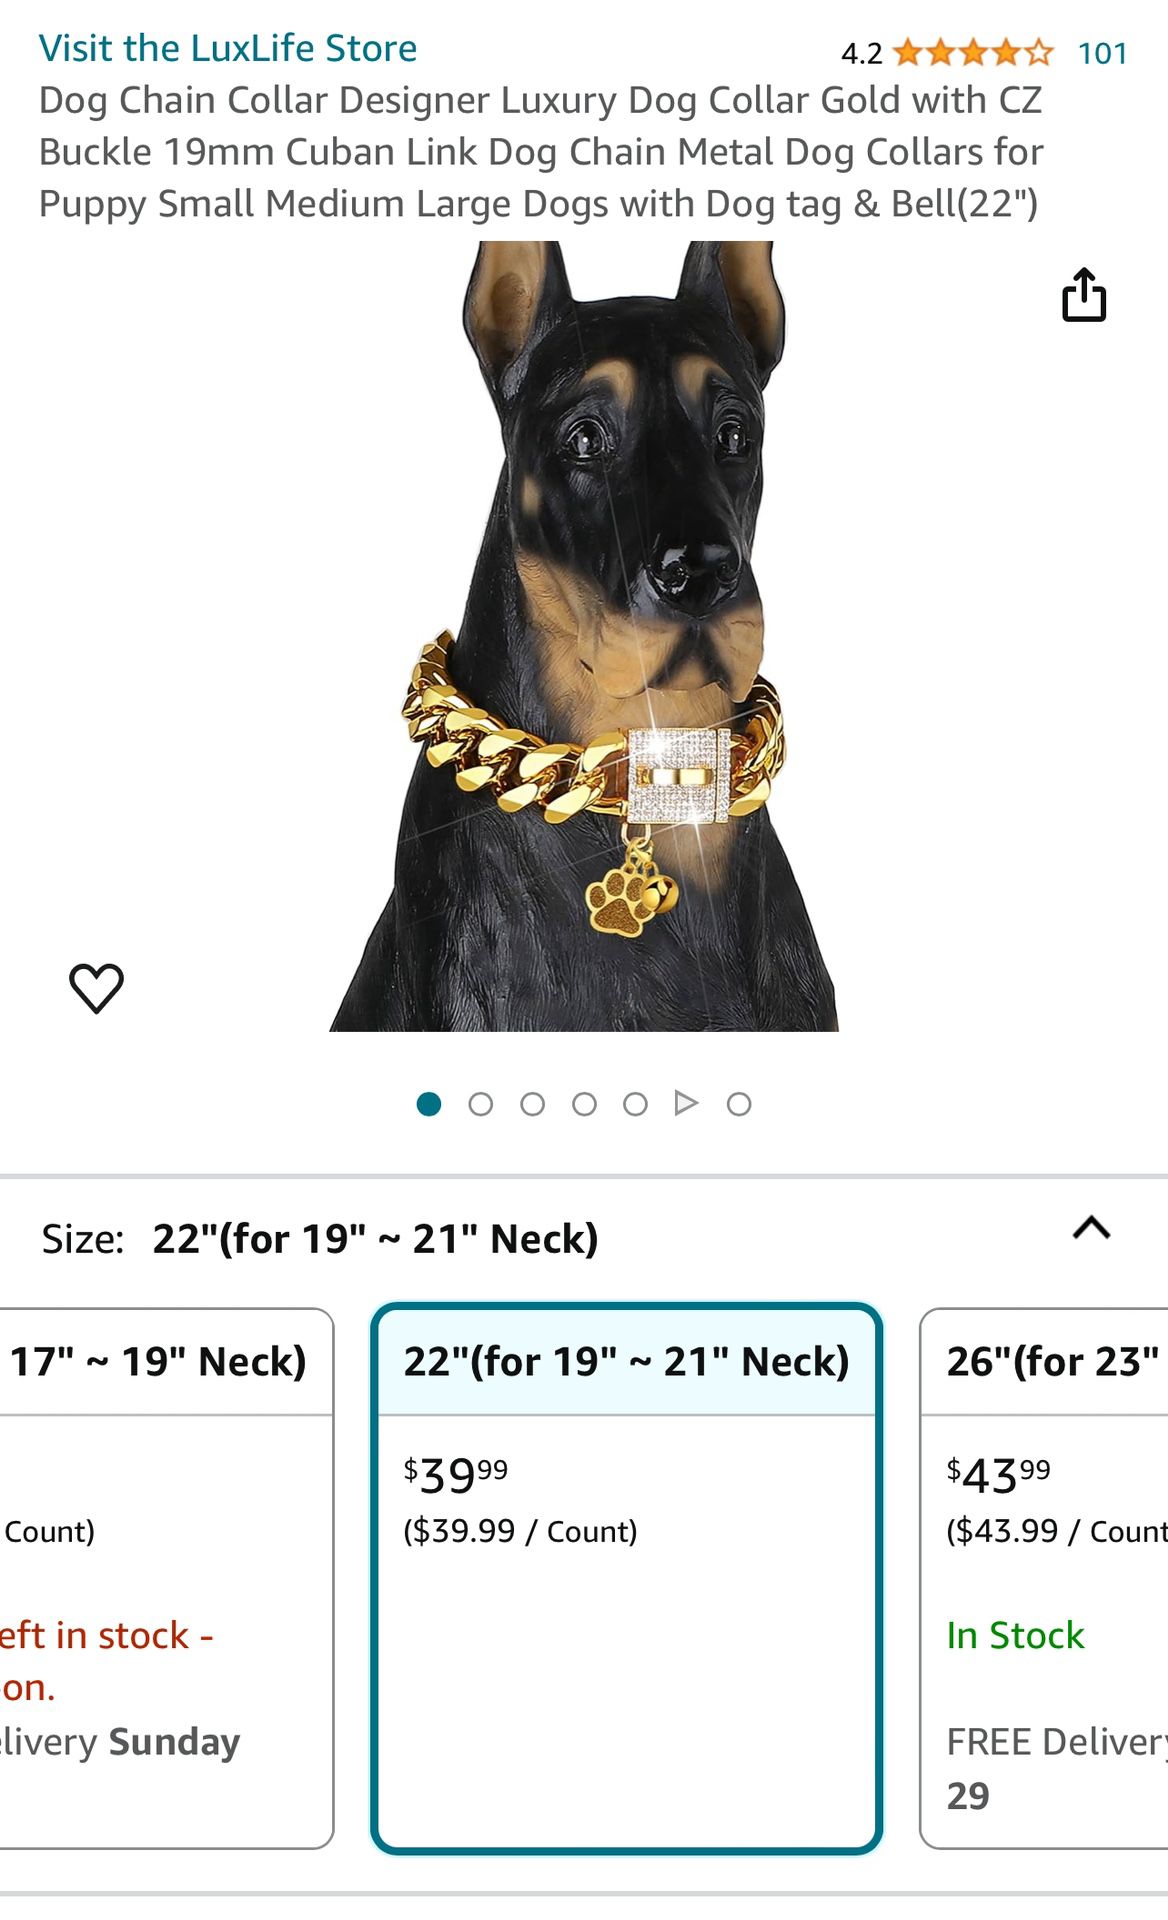 HDK LUX Dog Collar 